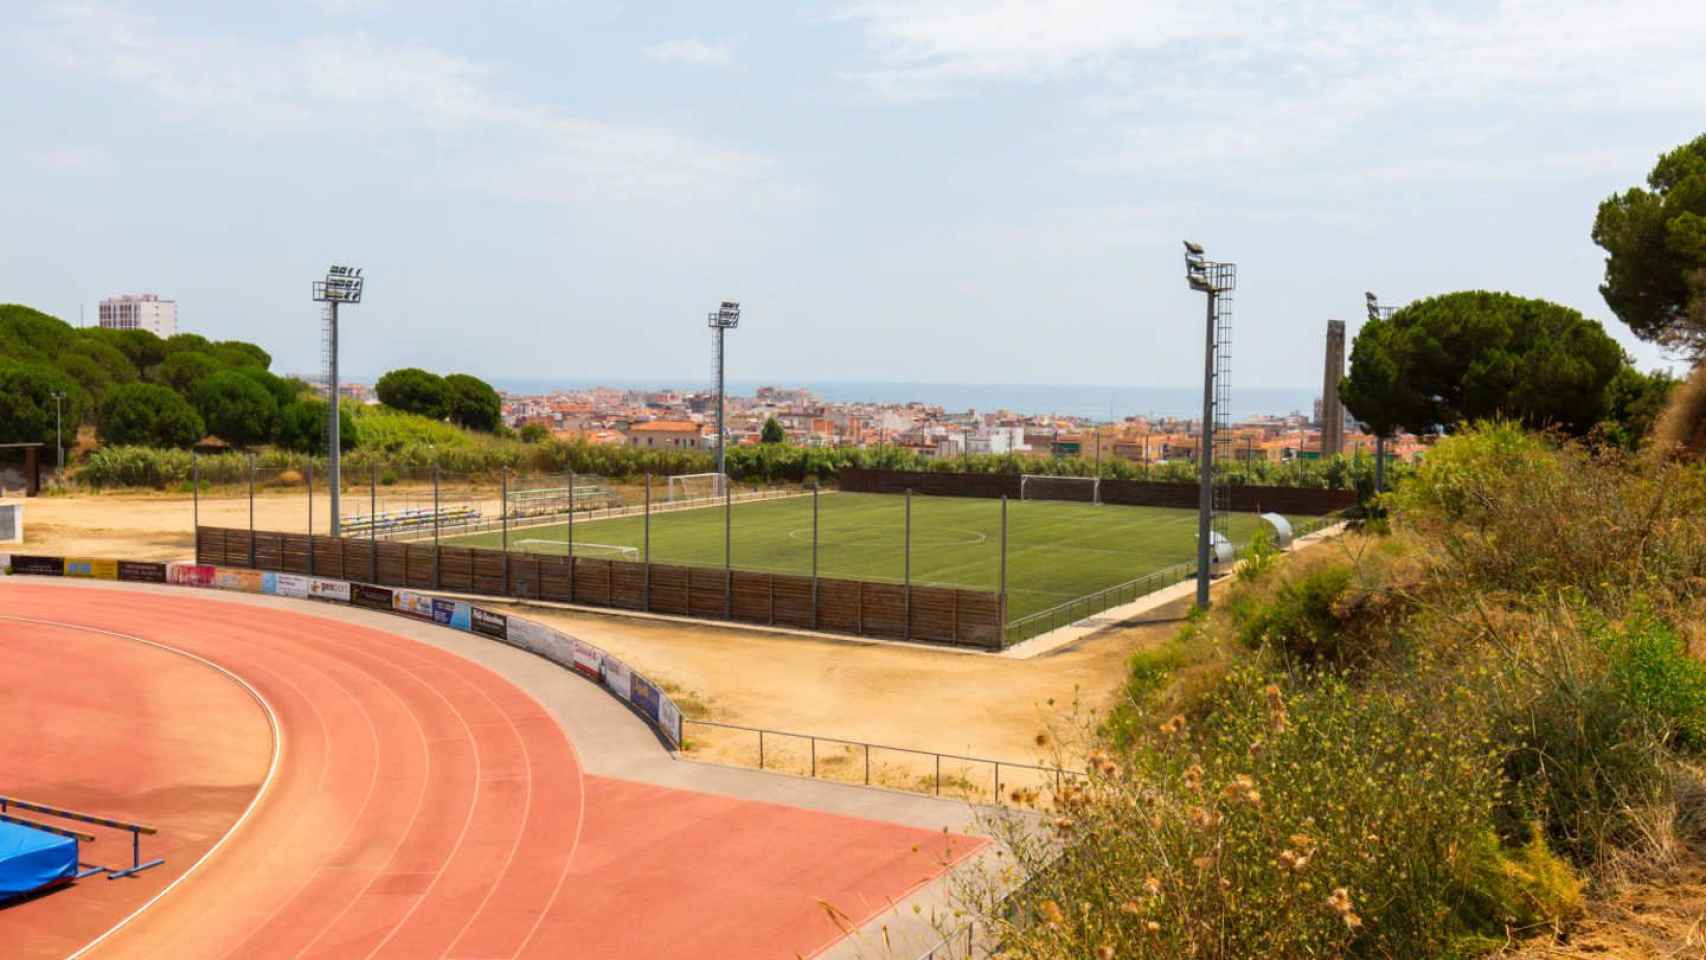 Zona deportiva de Calella, ubicación donde tuvo lugar la agresión sexual